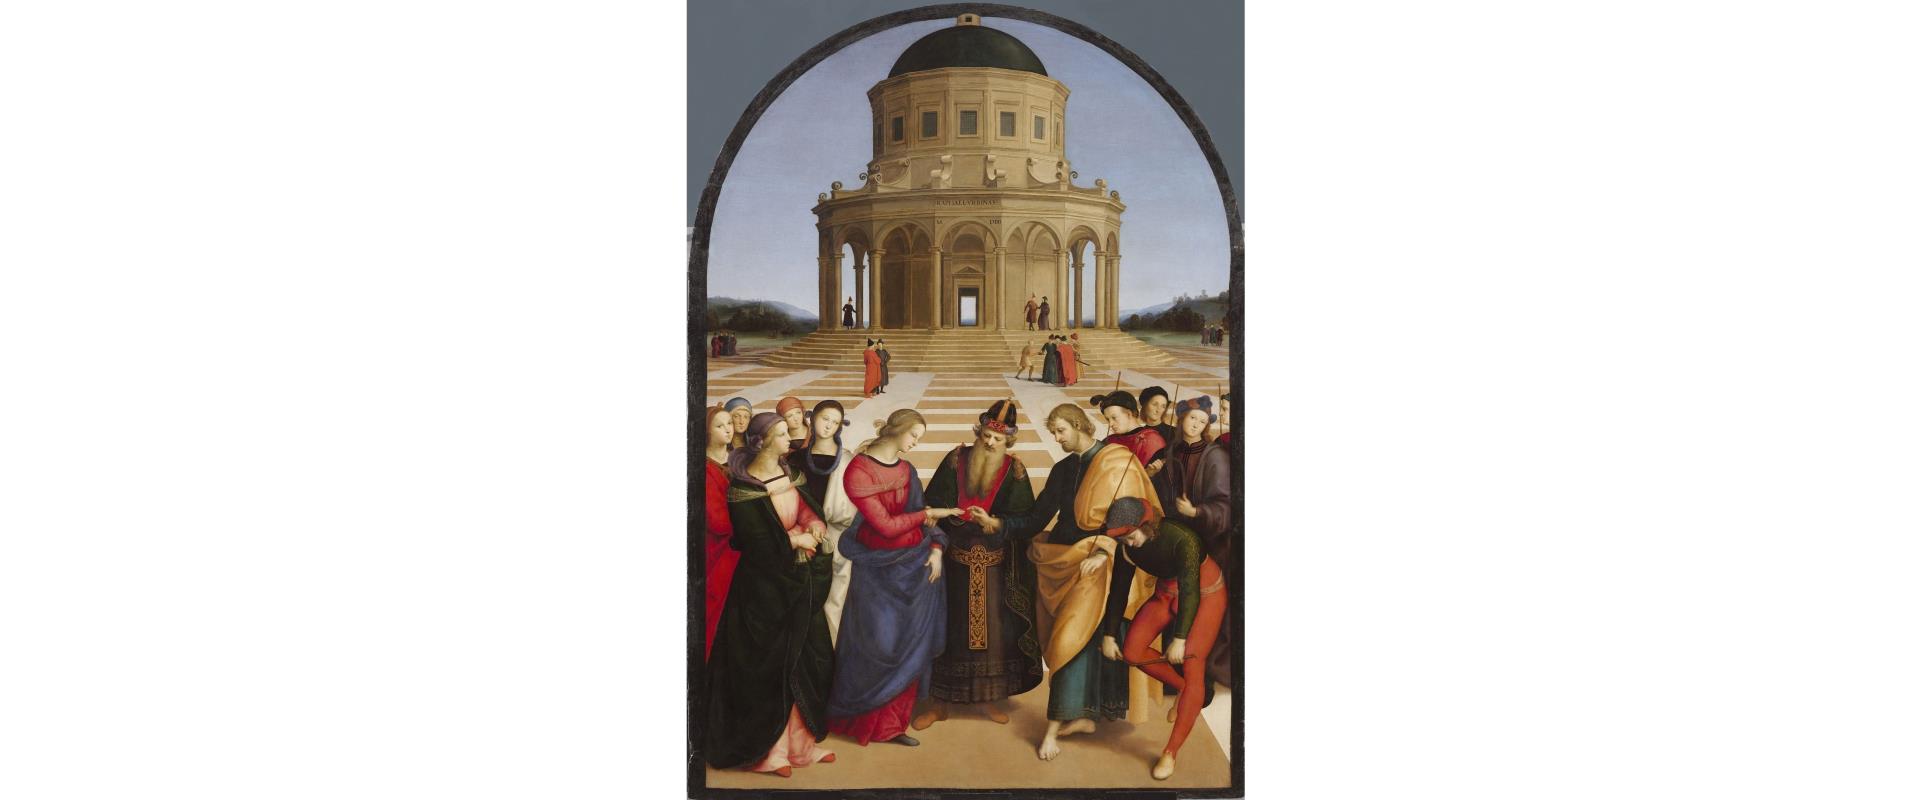 Conservato alla Pinacoteca di Brera di Milano, questo capolavoro del giovane Raffaello segna la maturità stilistica dell''artista, rispetto al maestro Perugino. Soggiorna al Best Western Hotel City e scopri le meraviglie di Milano.